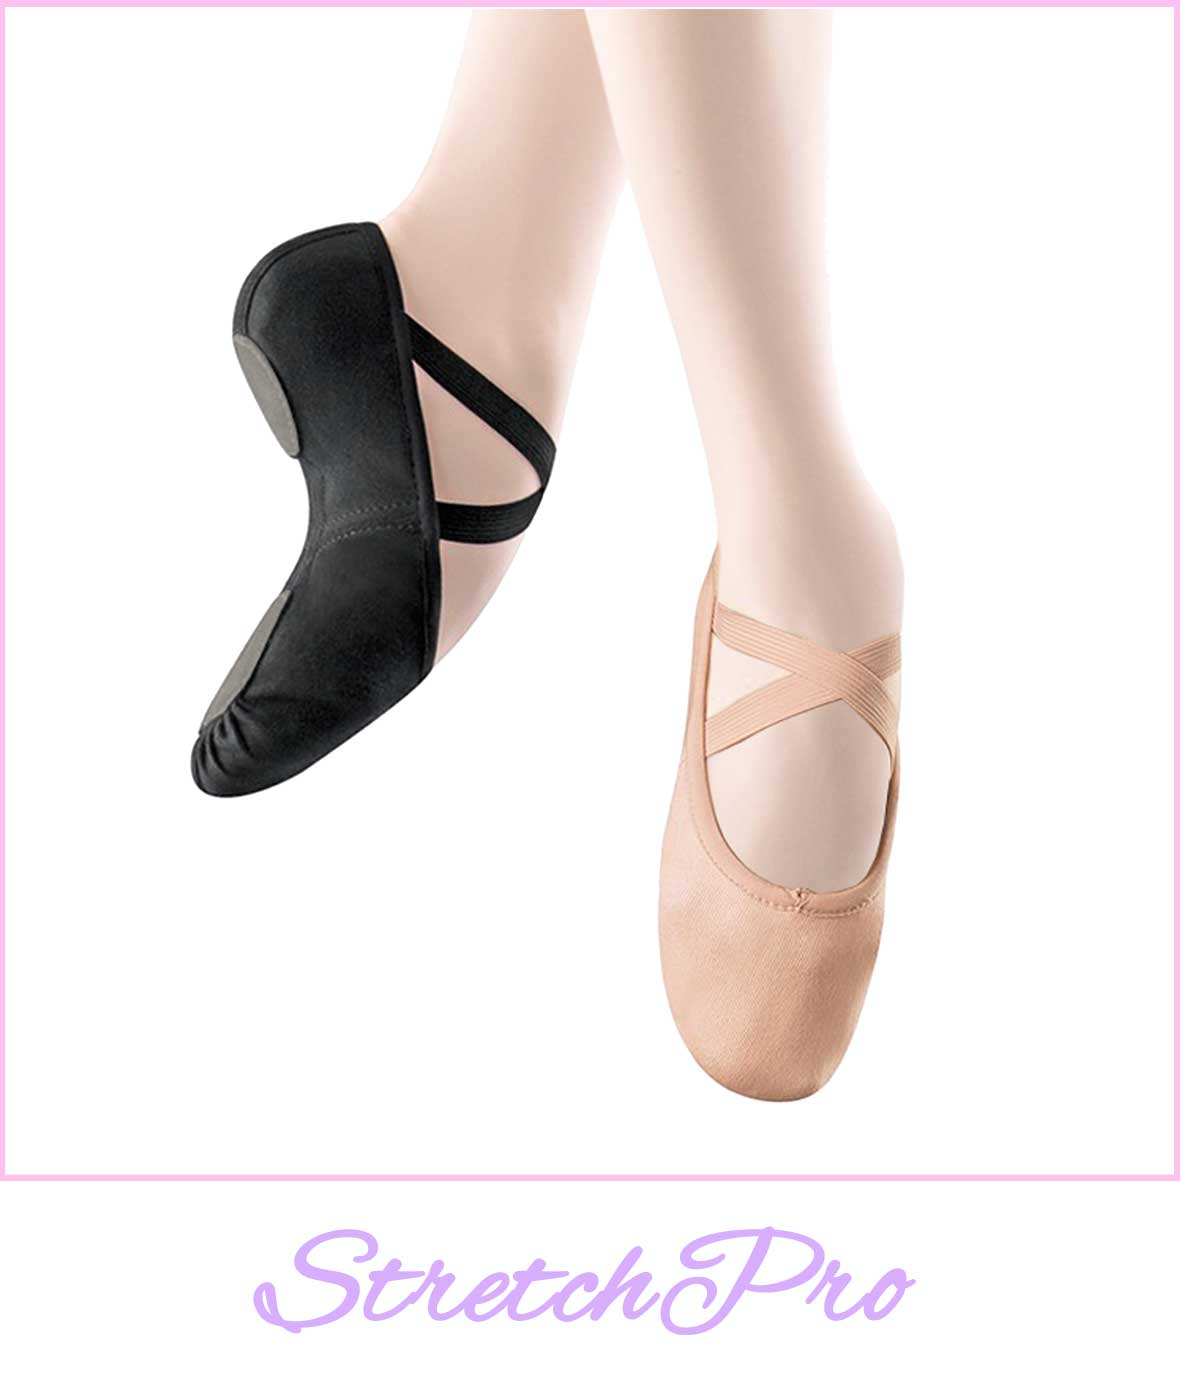 Professionele balletschoenen | Splitzool van elastisch canvas